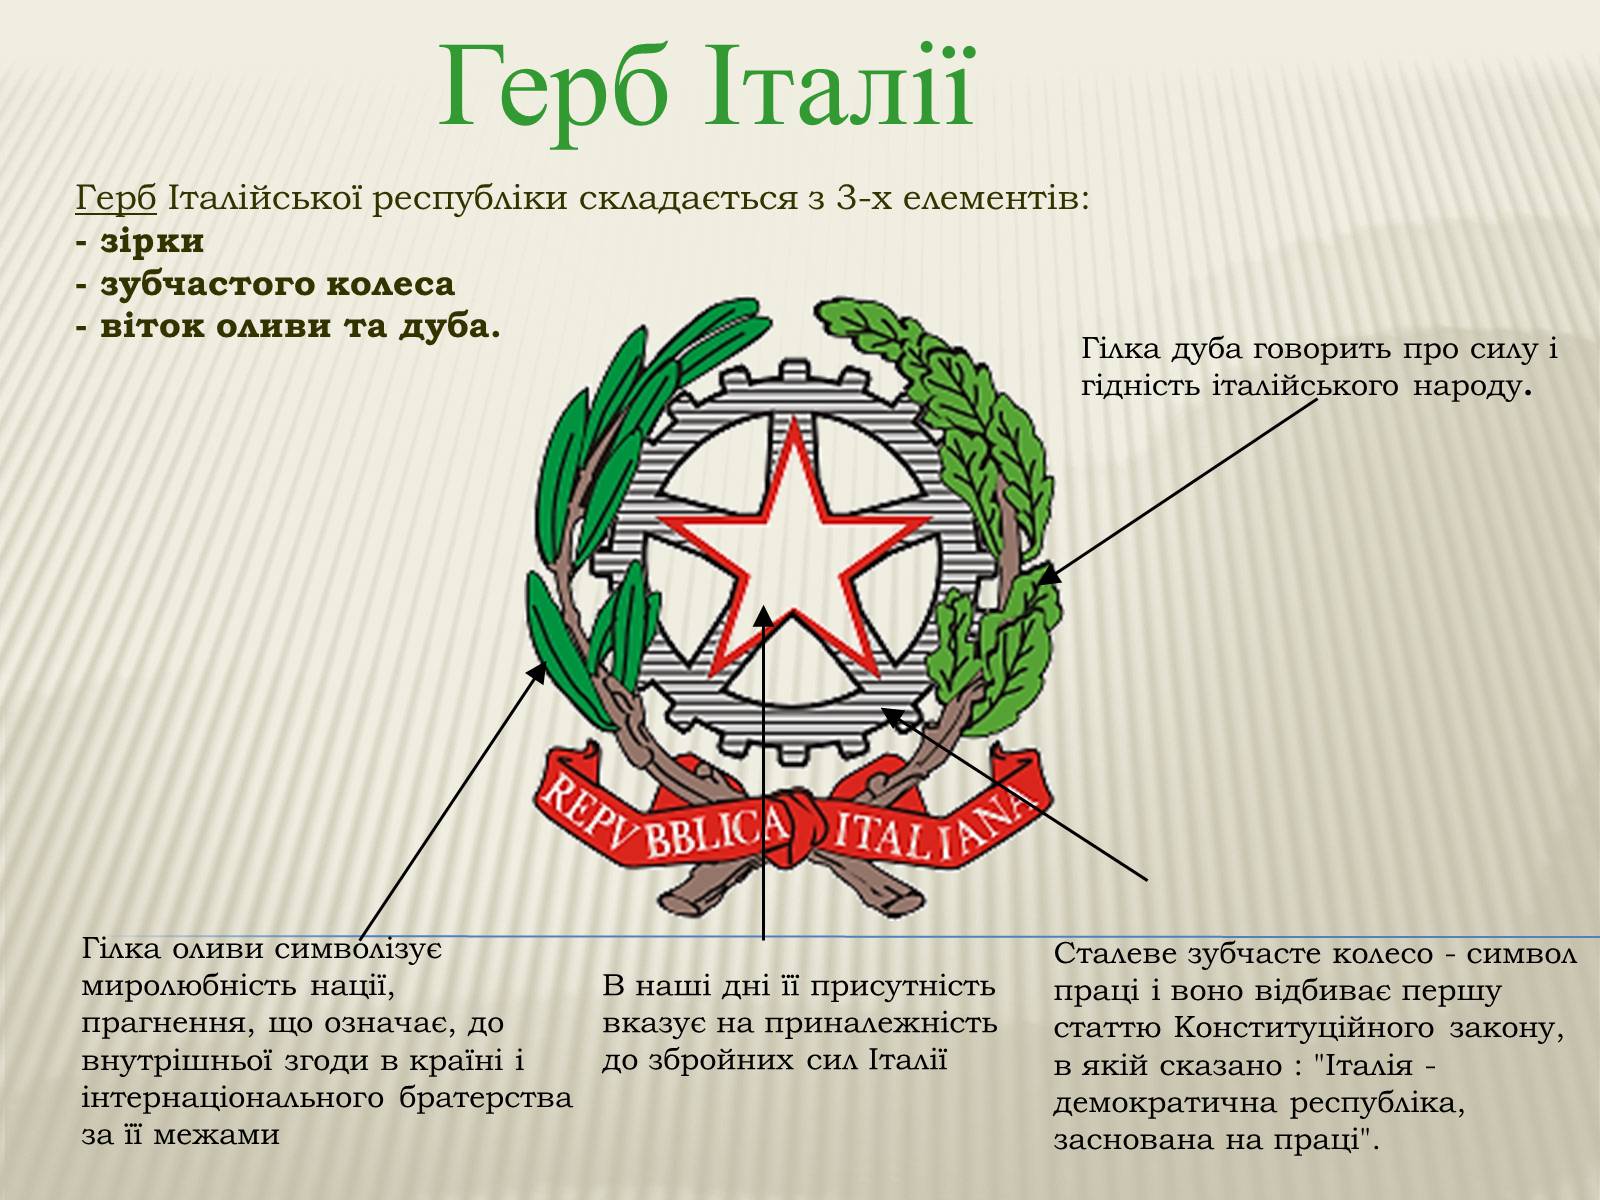 фотография 1943 г герб италии